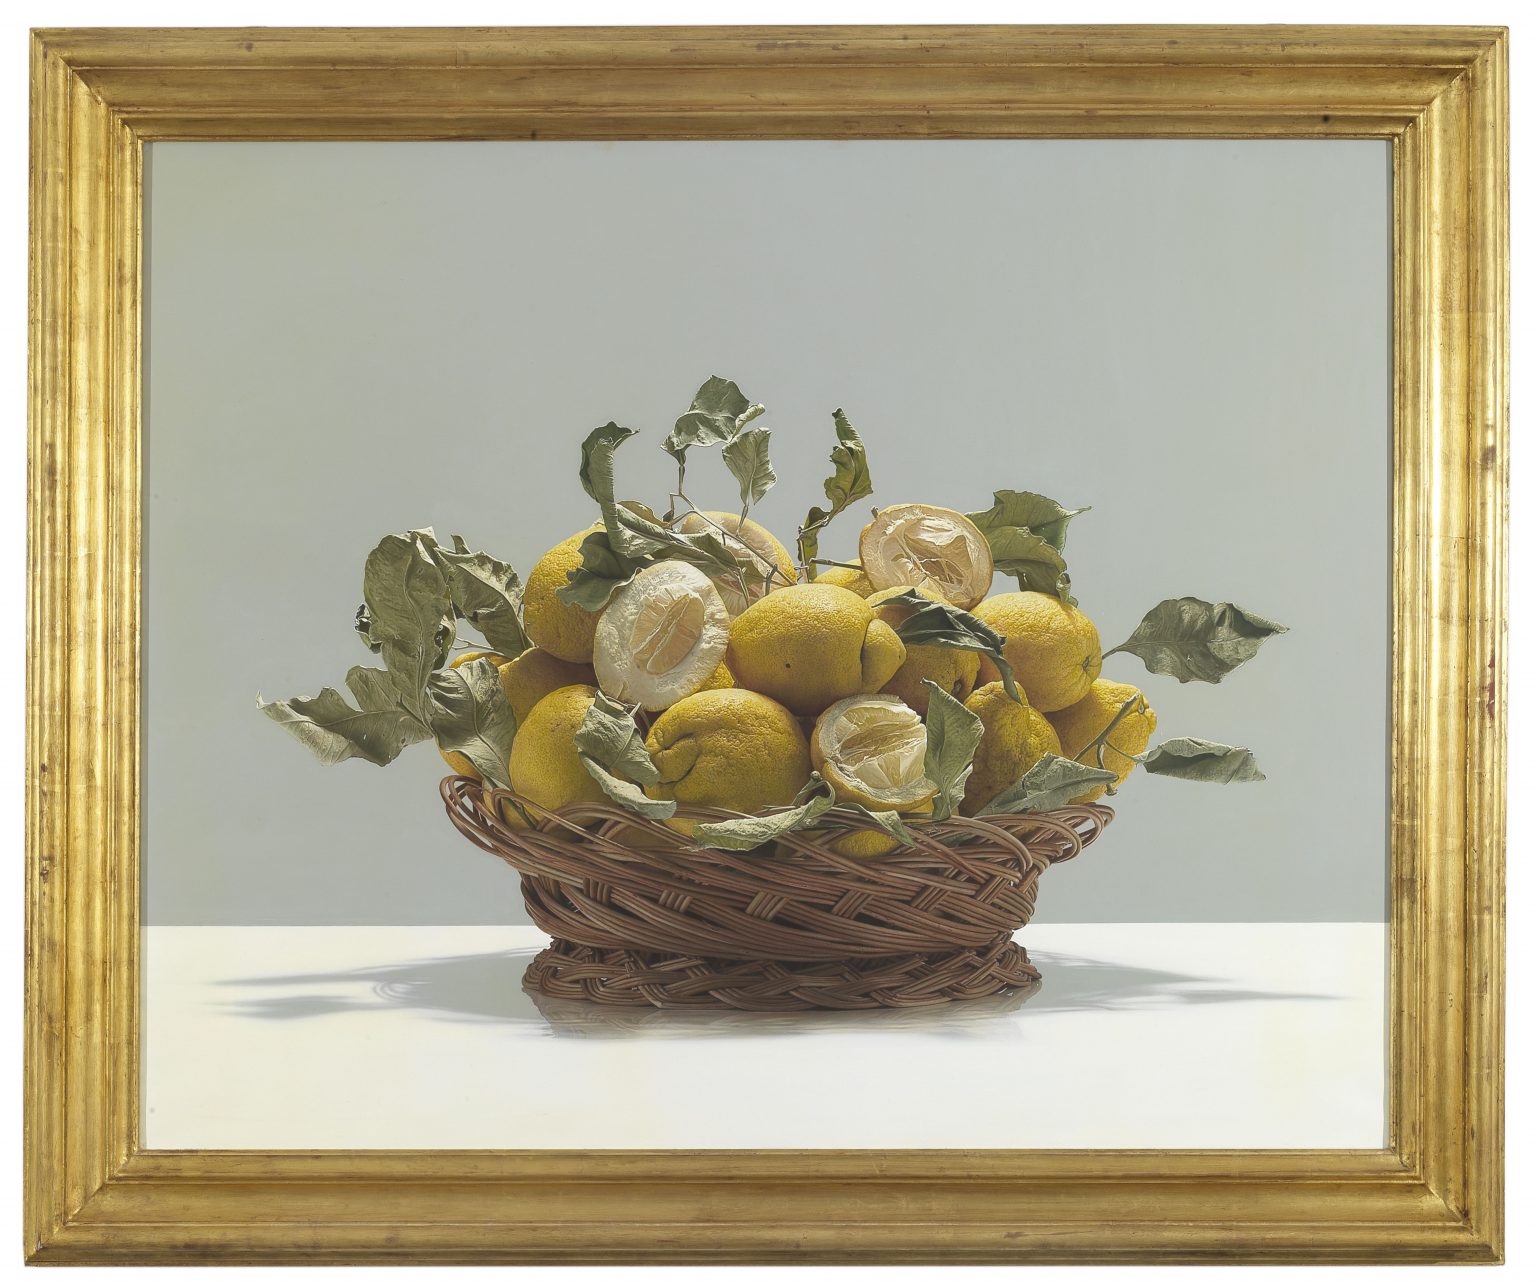 Luciano Ventrone Adagio, 2002 130 x 162 cm Oil on linen